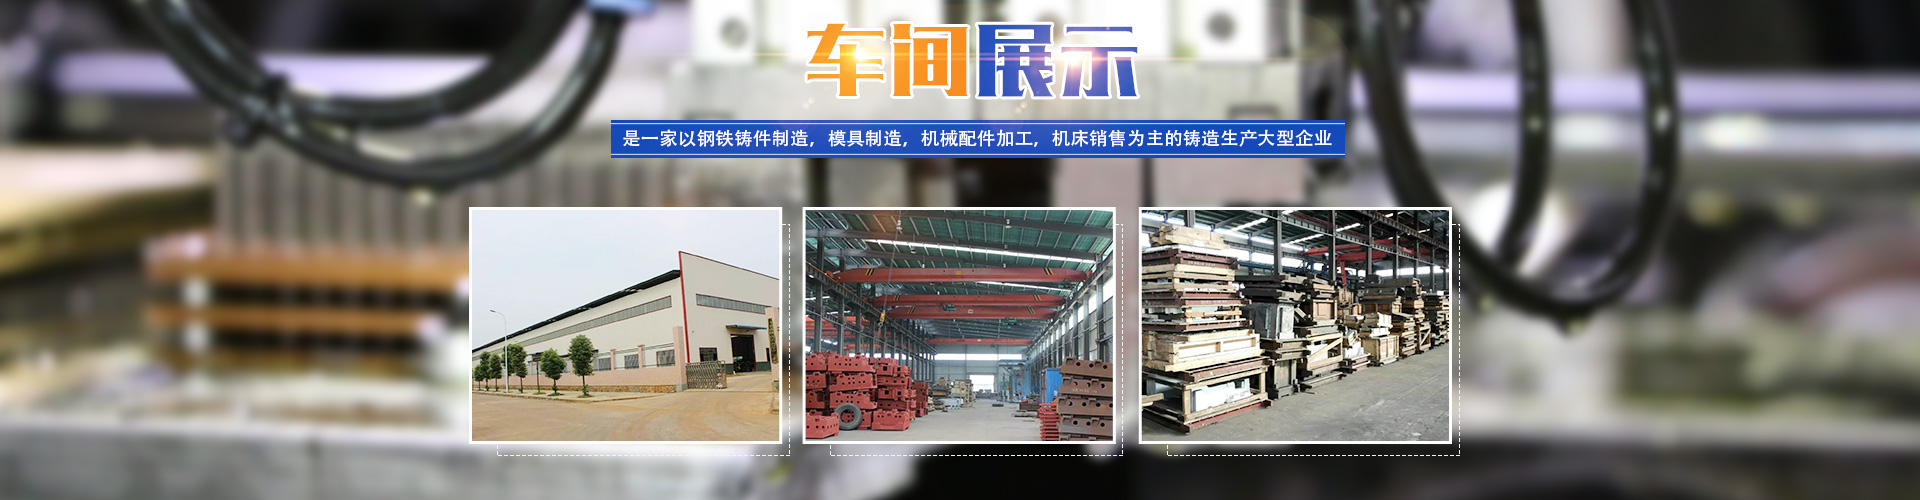 嘉禾縣中(zhōng)毅達鑄造有限公司_耐磨鑄件|精密鑄件|鋼鐵a鑄件制造|模具制造|機械配件加工(gōng)|機床銷售